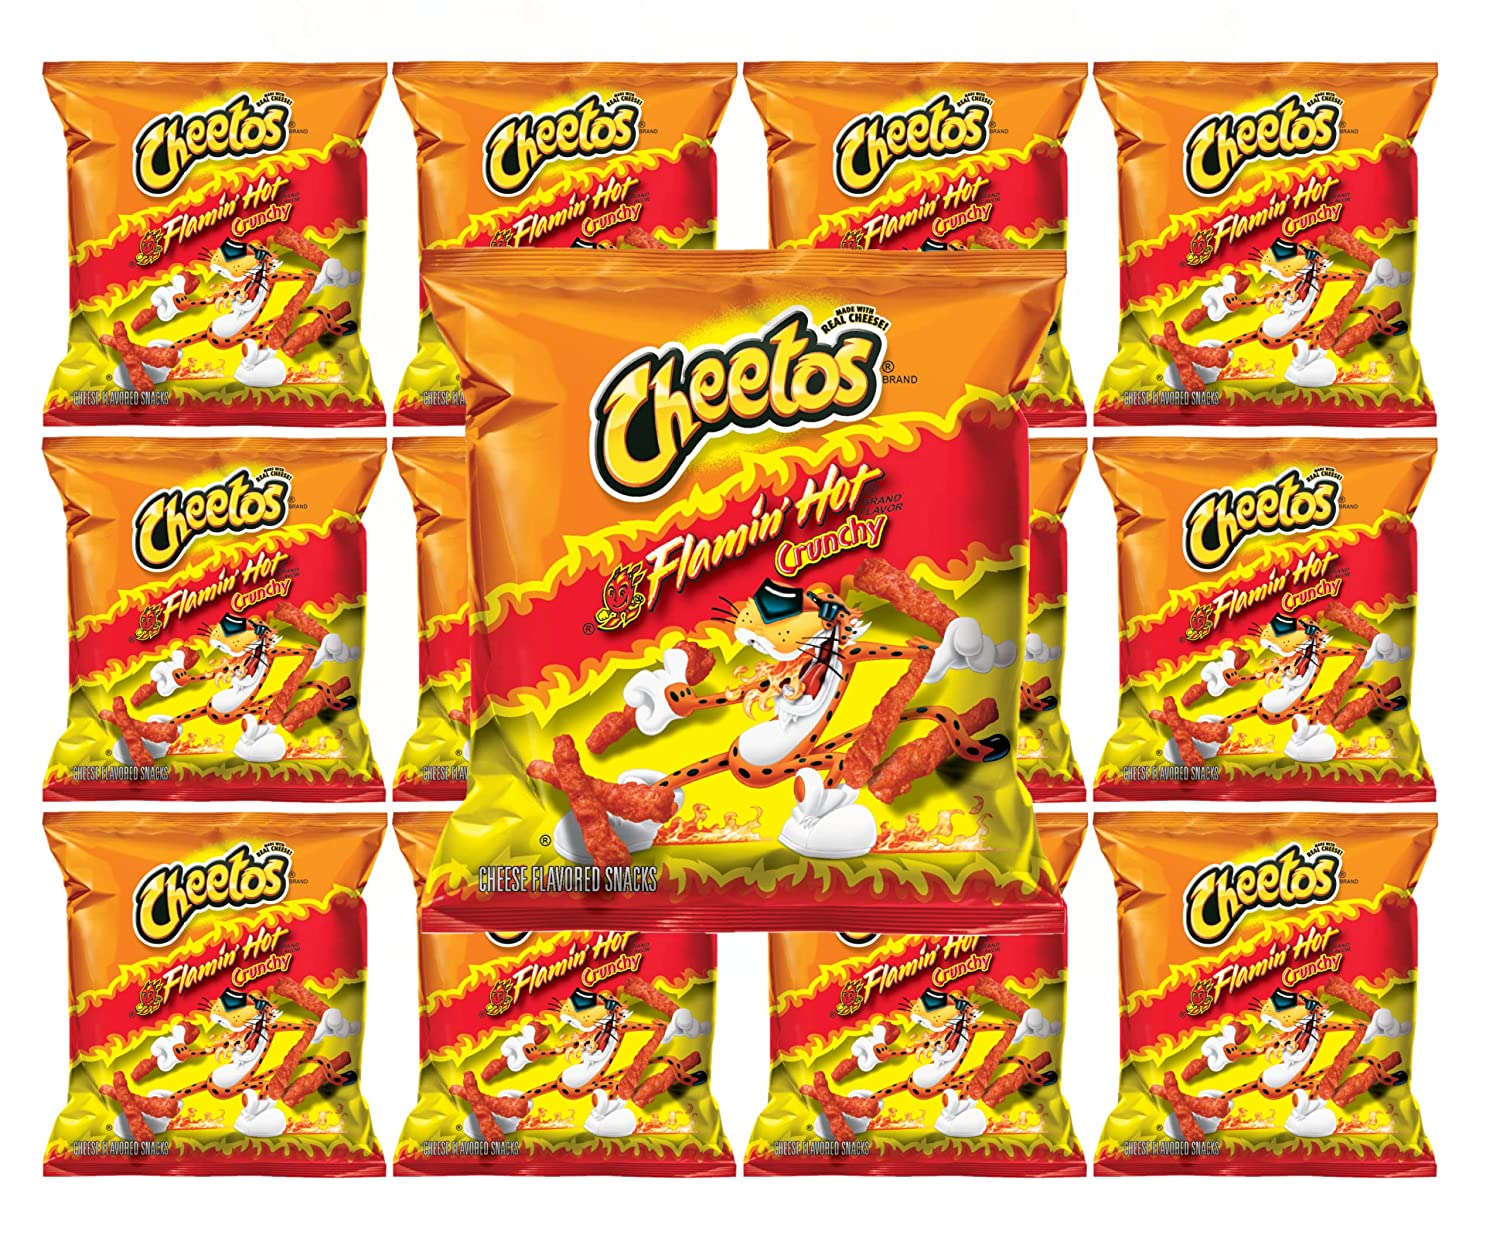 Novos Cheetos Crunchy #mercado #cheetos #alimentos